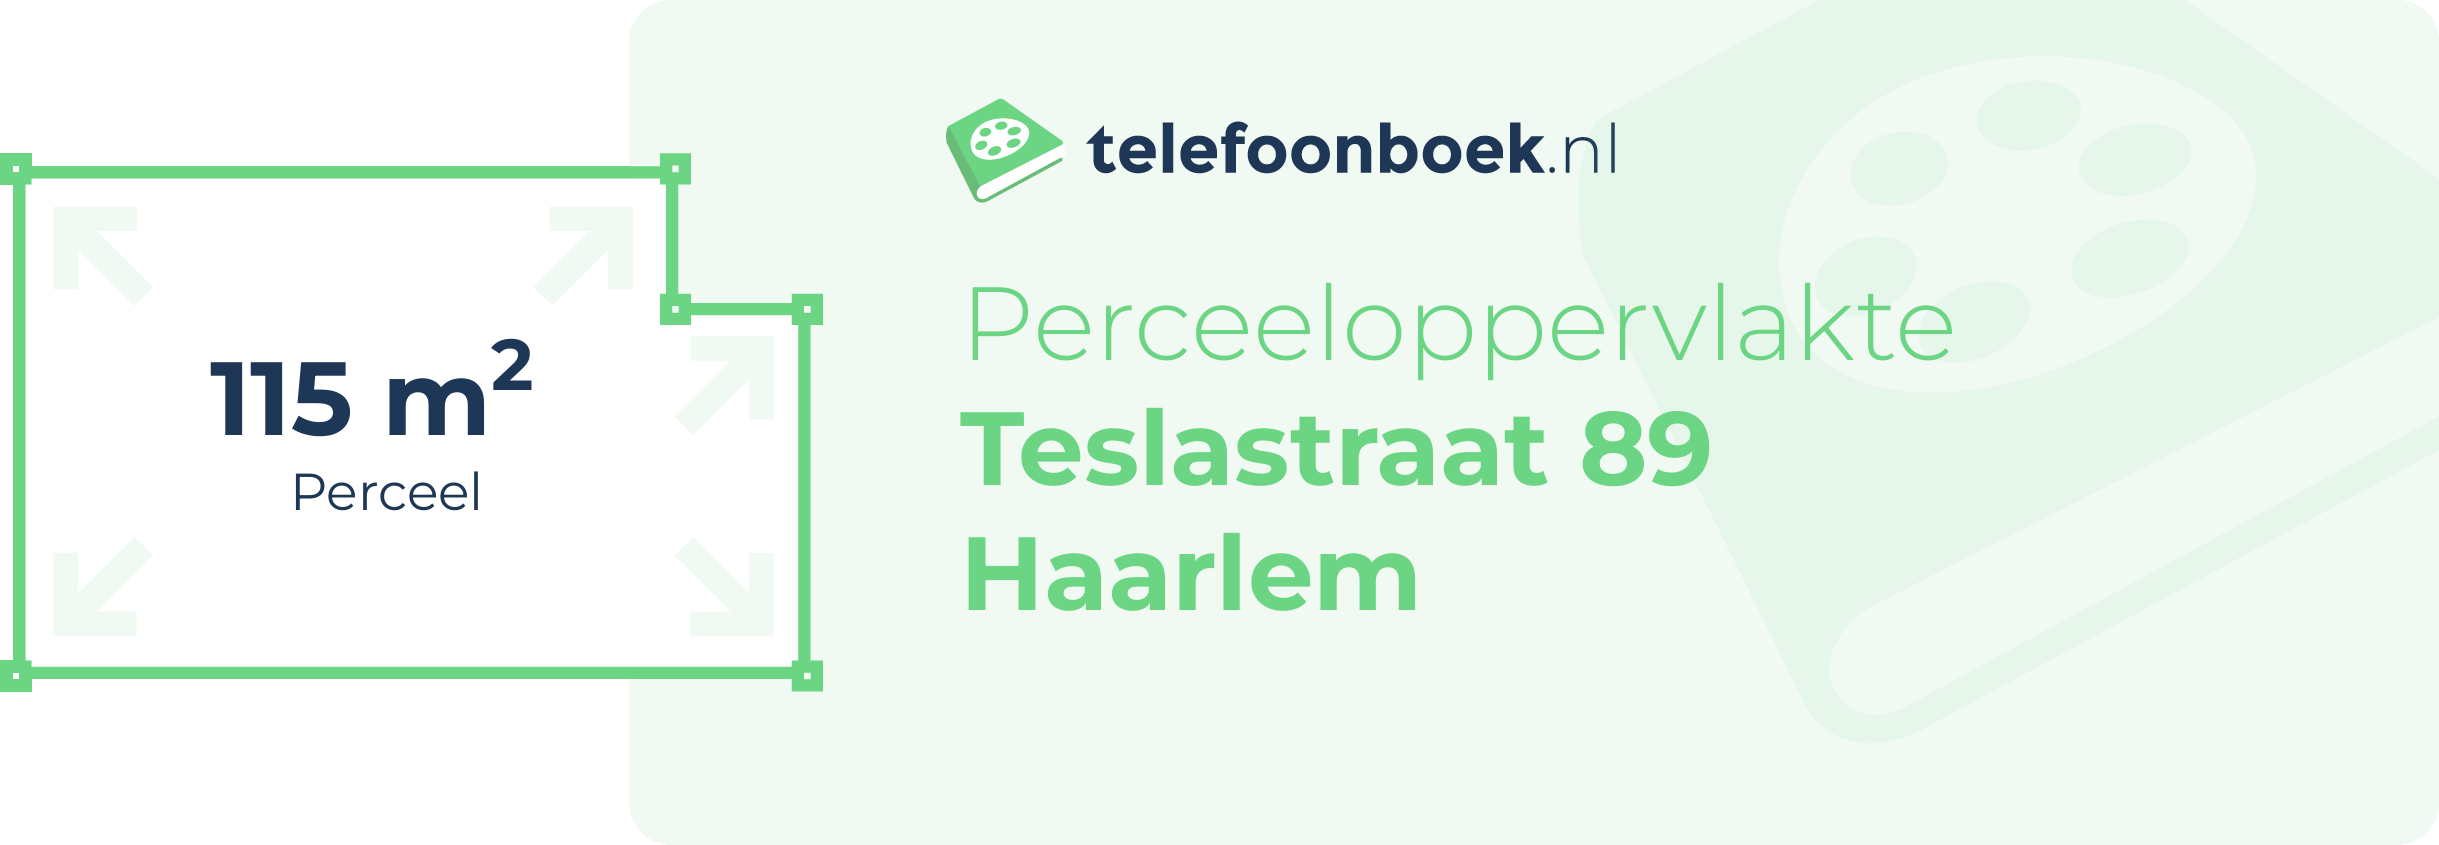 Perceeloppervlakte Teslastraat 89 Haarlem